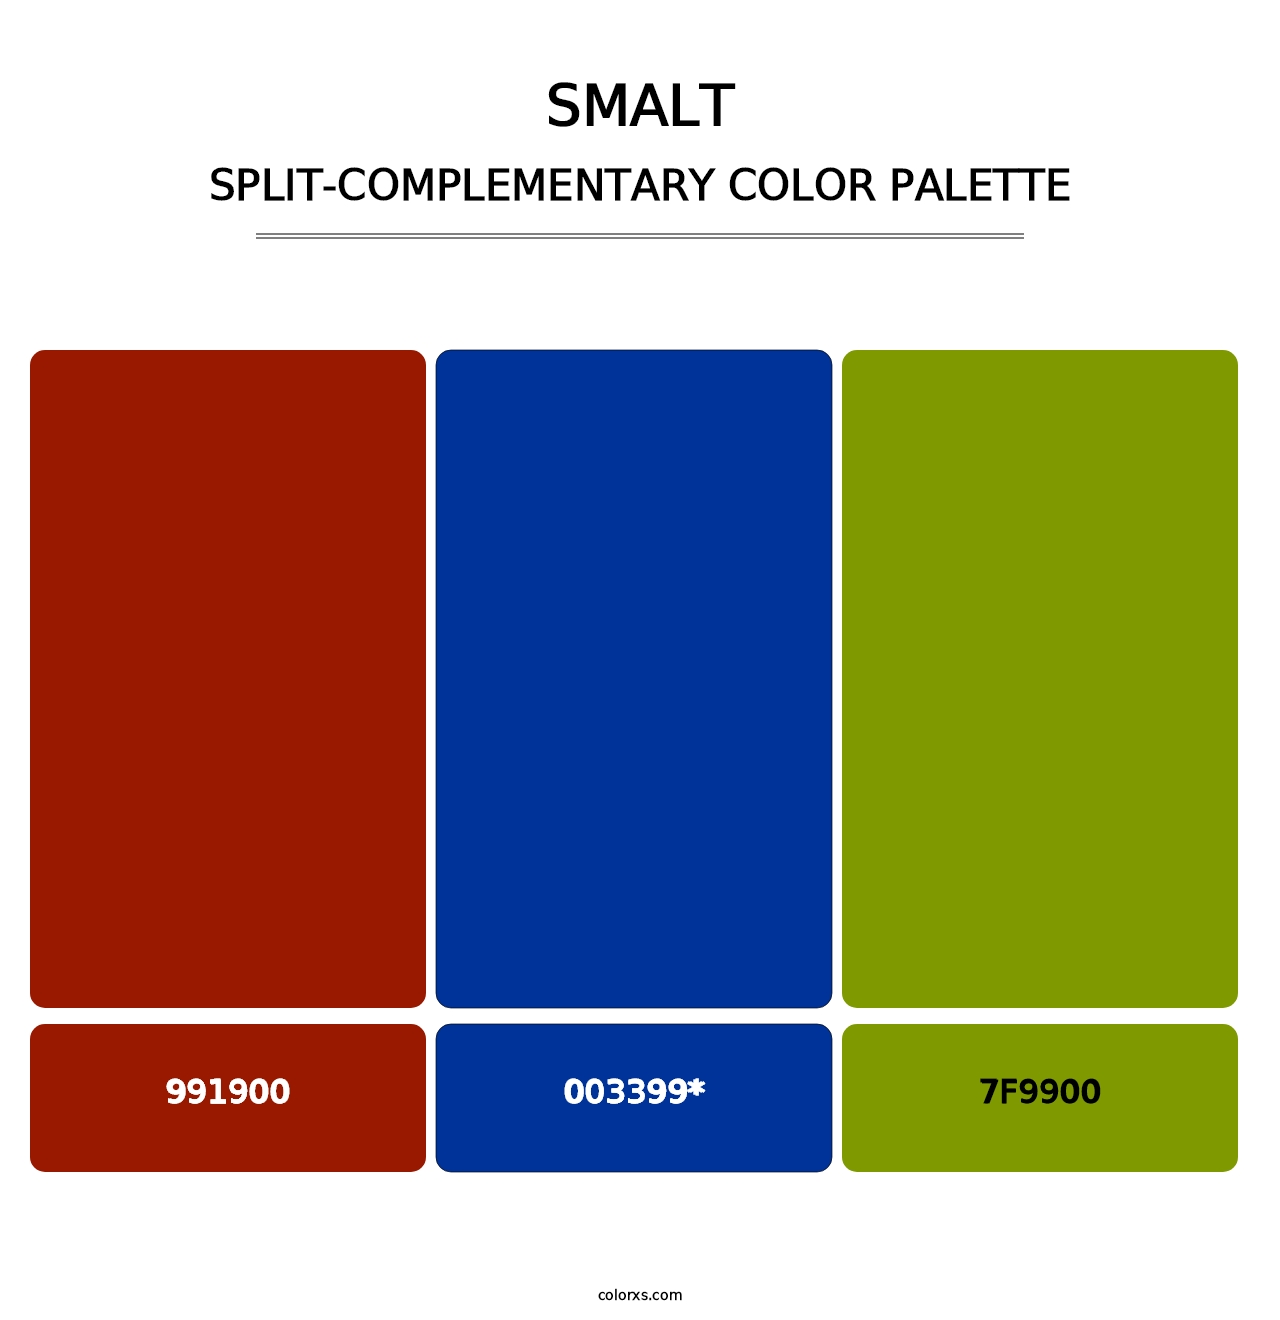 Smalt - Split-Complementary Color Palette